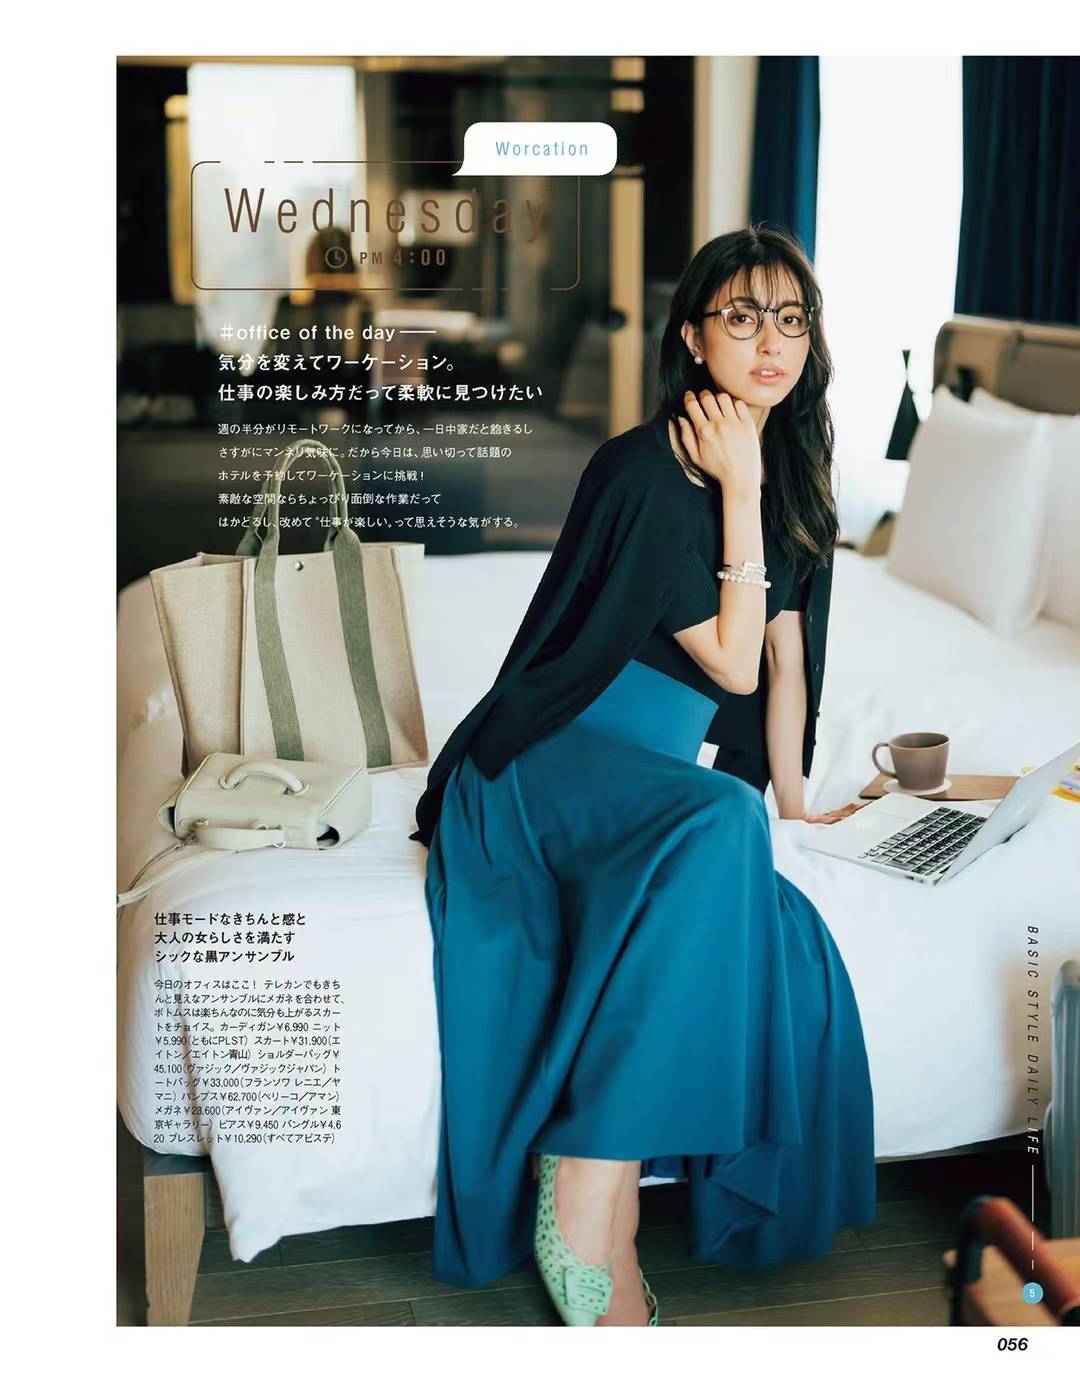 【瑜伽健身上新】 【日本】 014 《CLASSY》 2022年05月 日本女性潮流时尚搭配杂志